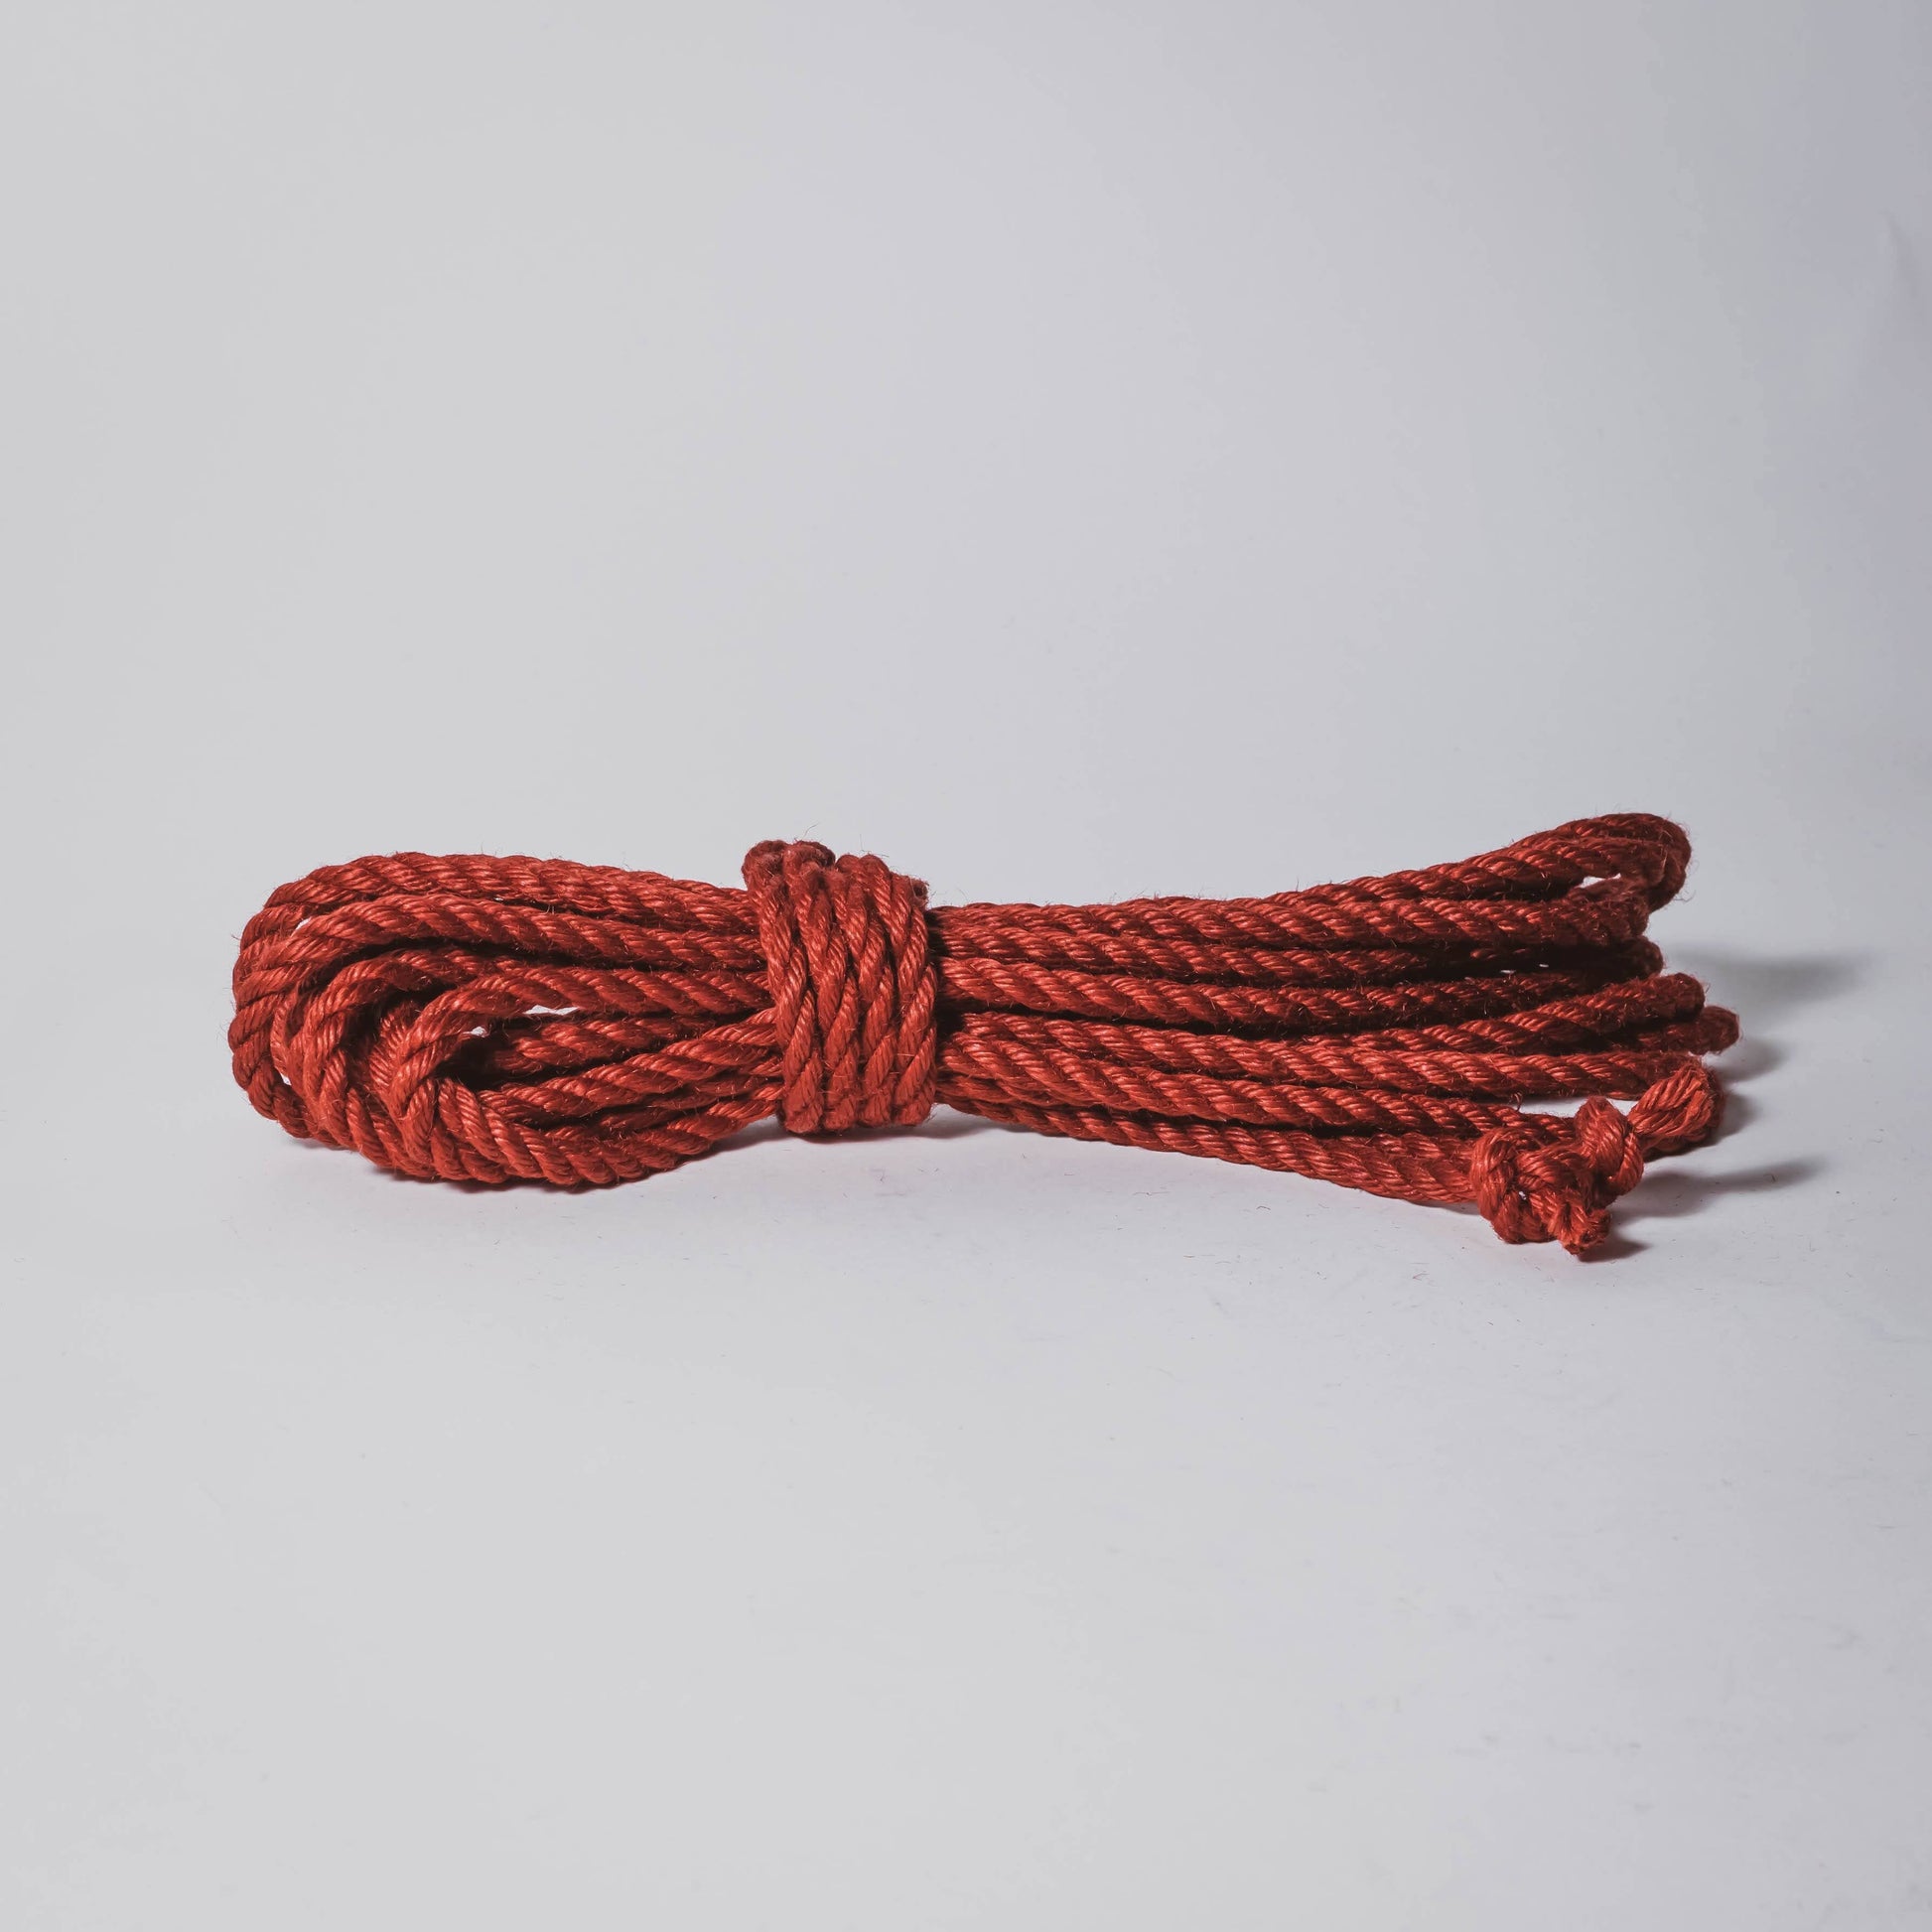 Treated Rope - 6mm Red Jute Rope Shibari Rope 